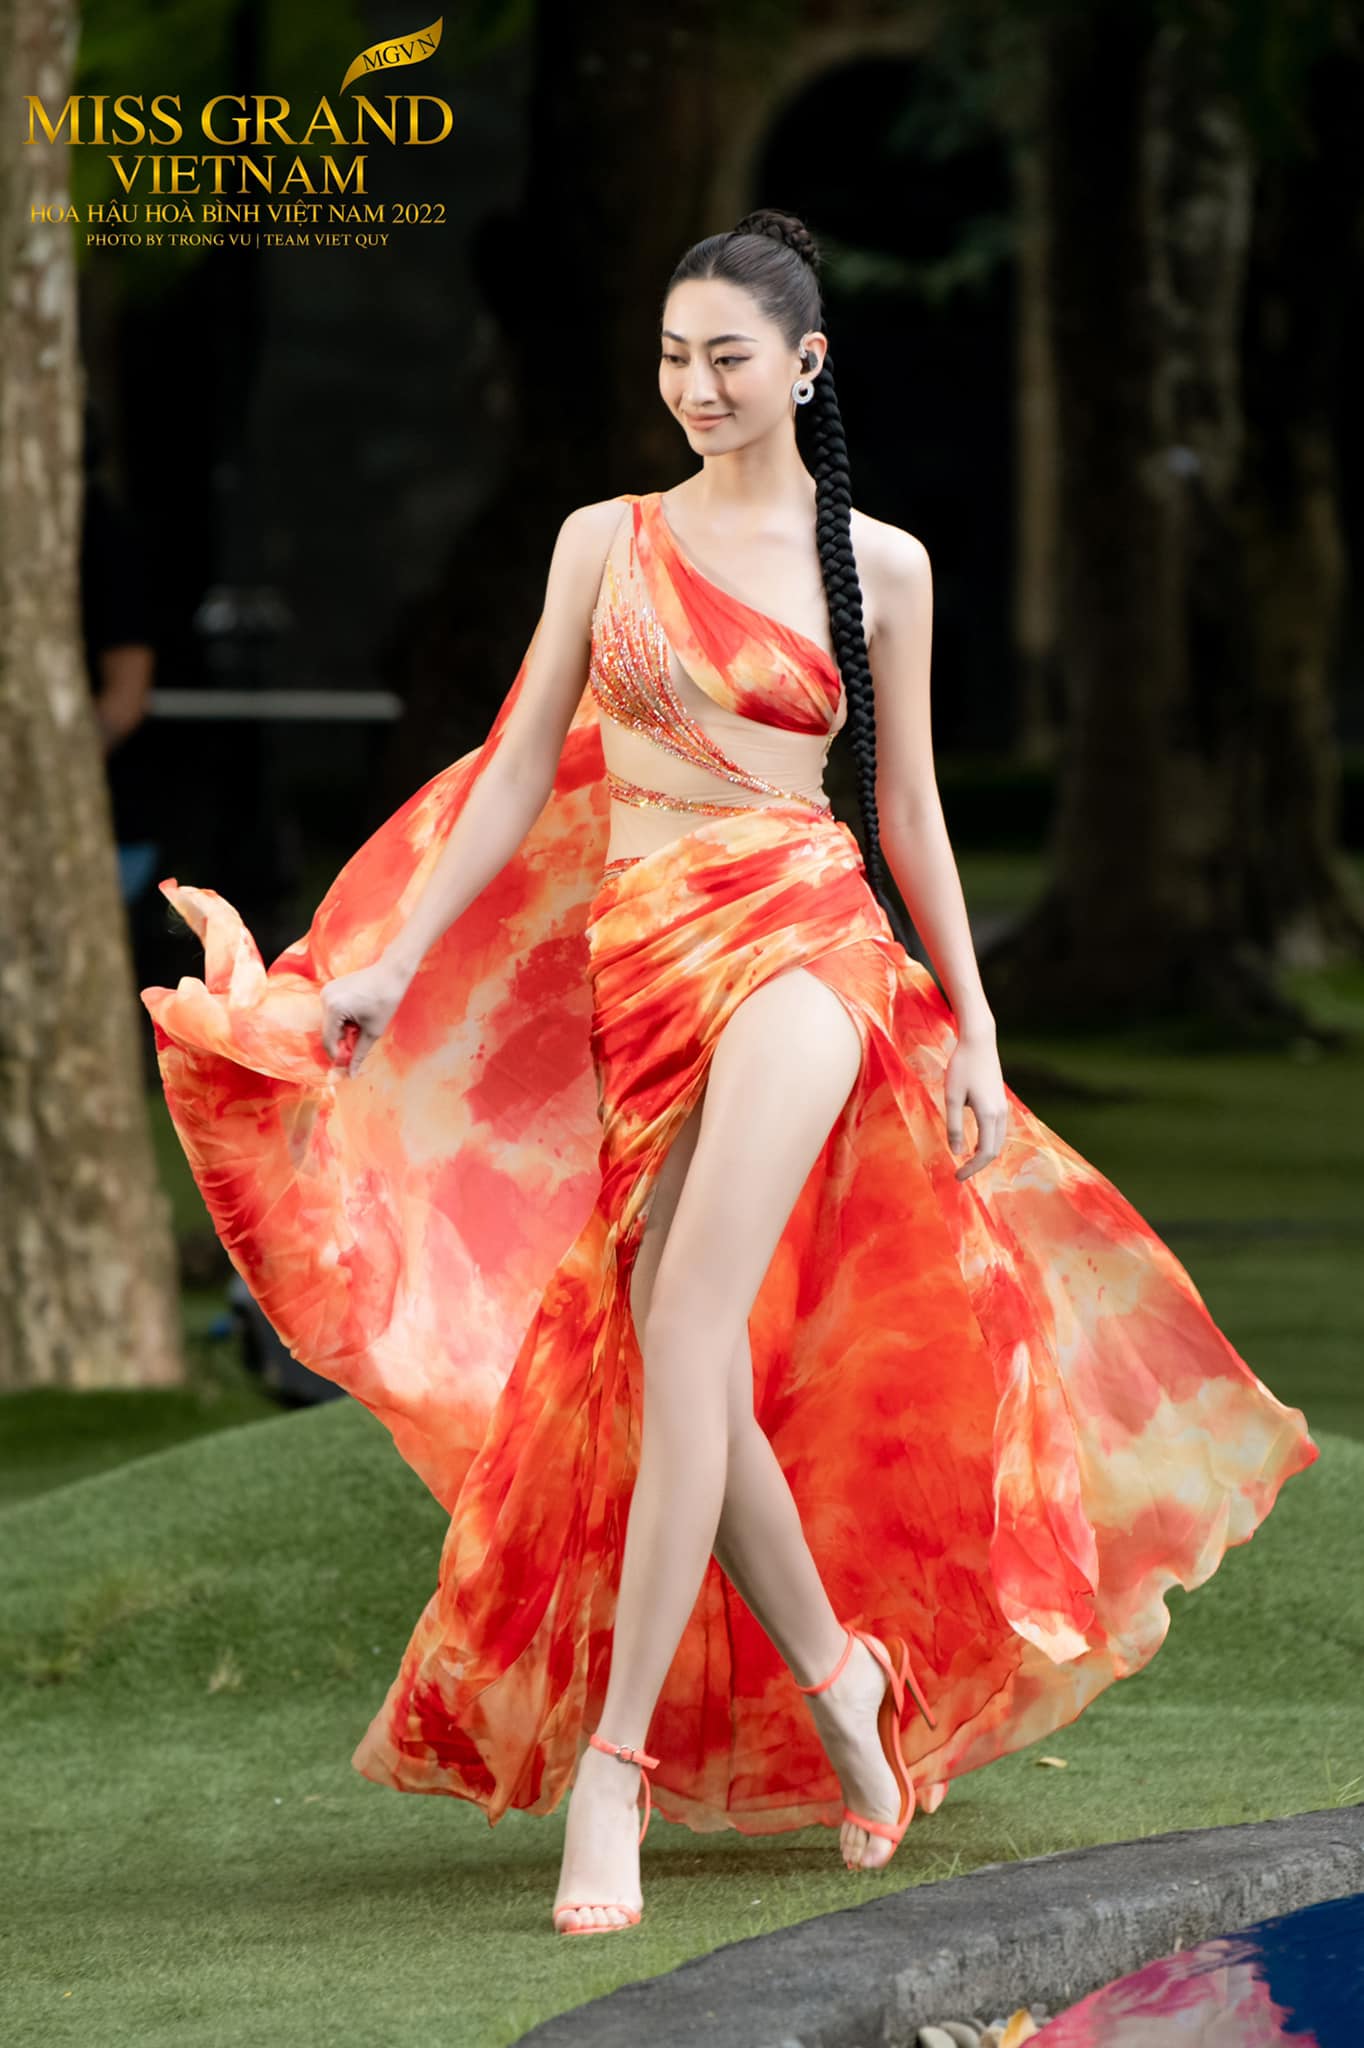 Đầm hồng cúp ngực chân váy xoắn xẻ cao MAEL FEMME – Hizu Dress Up